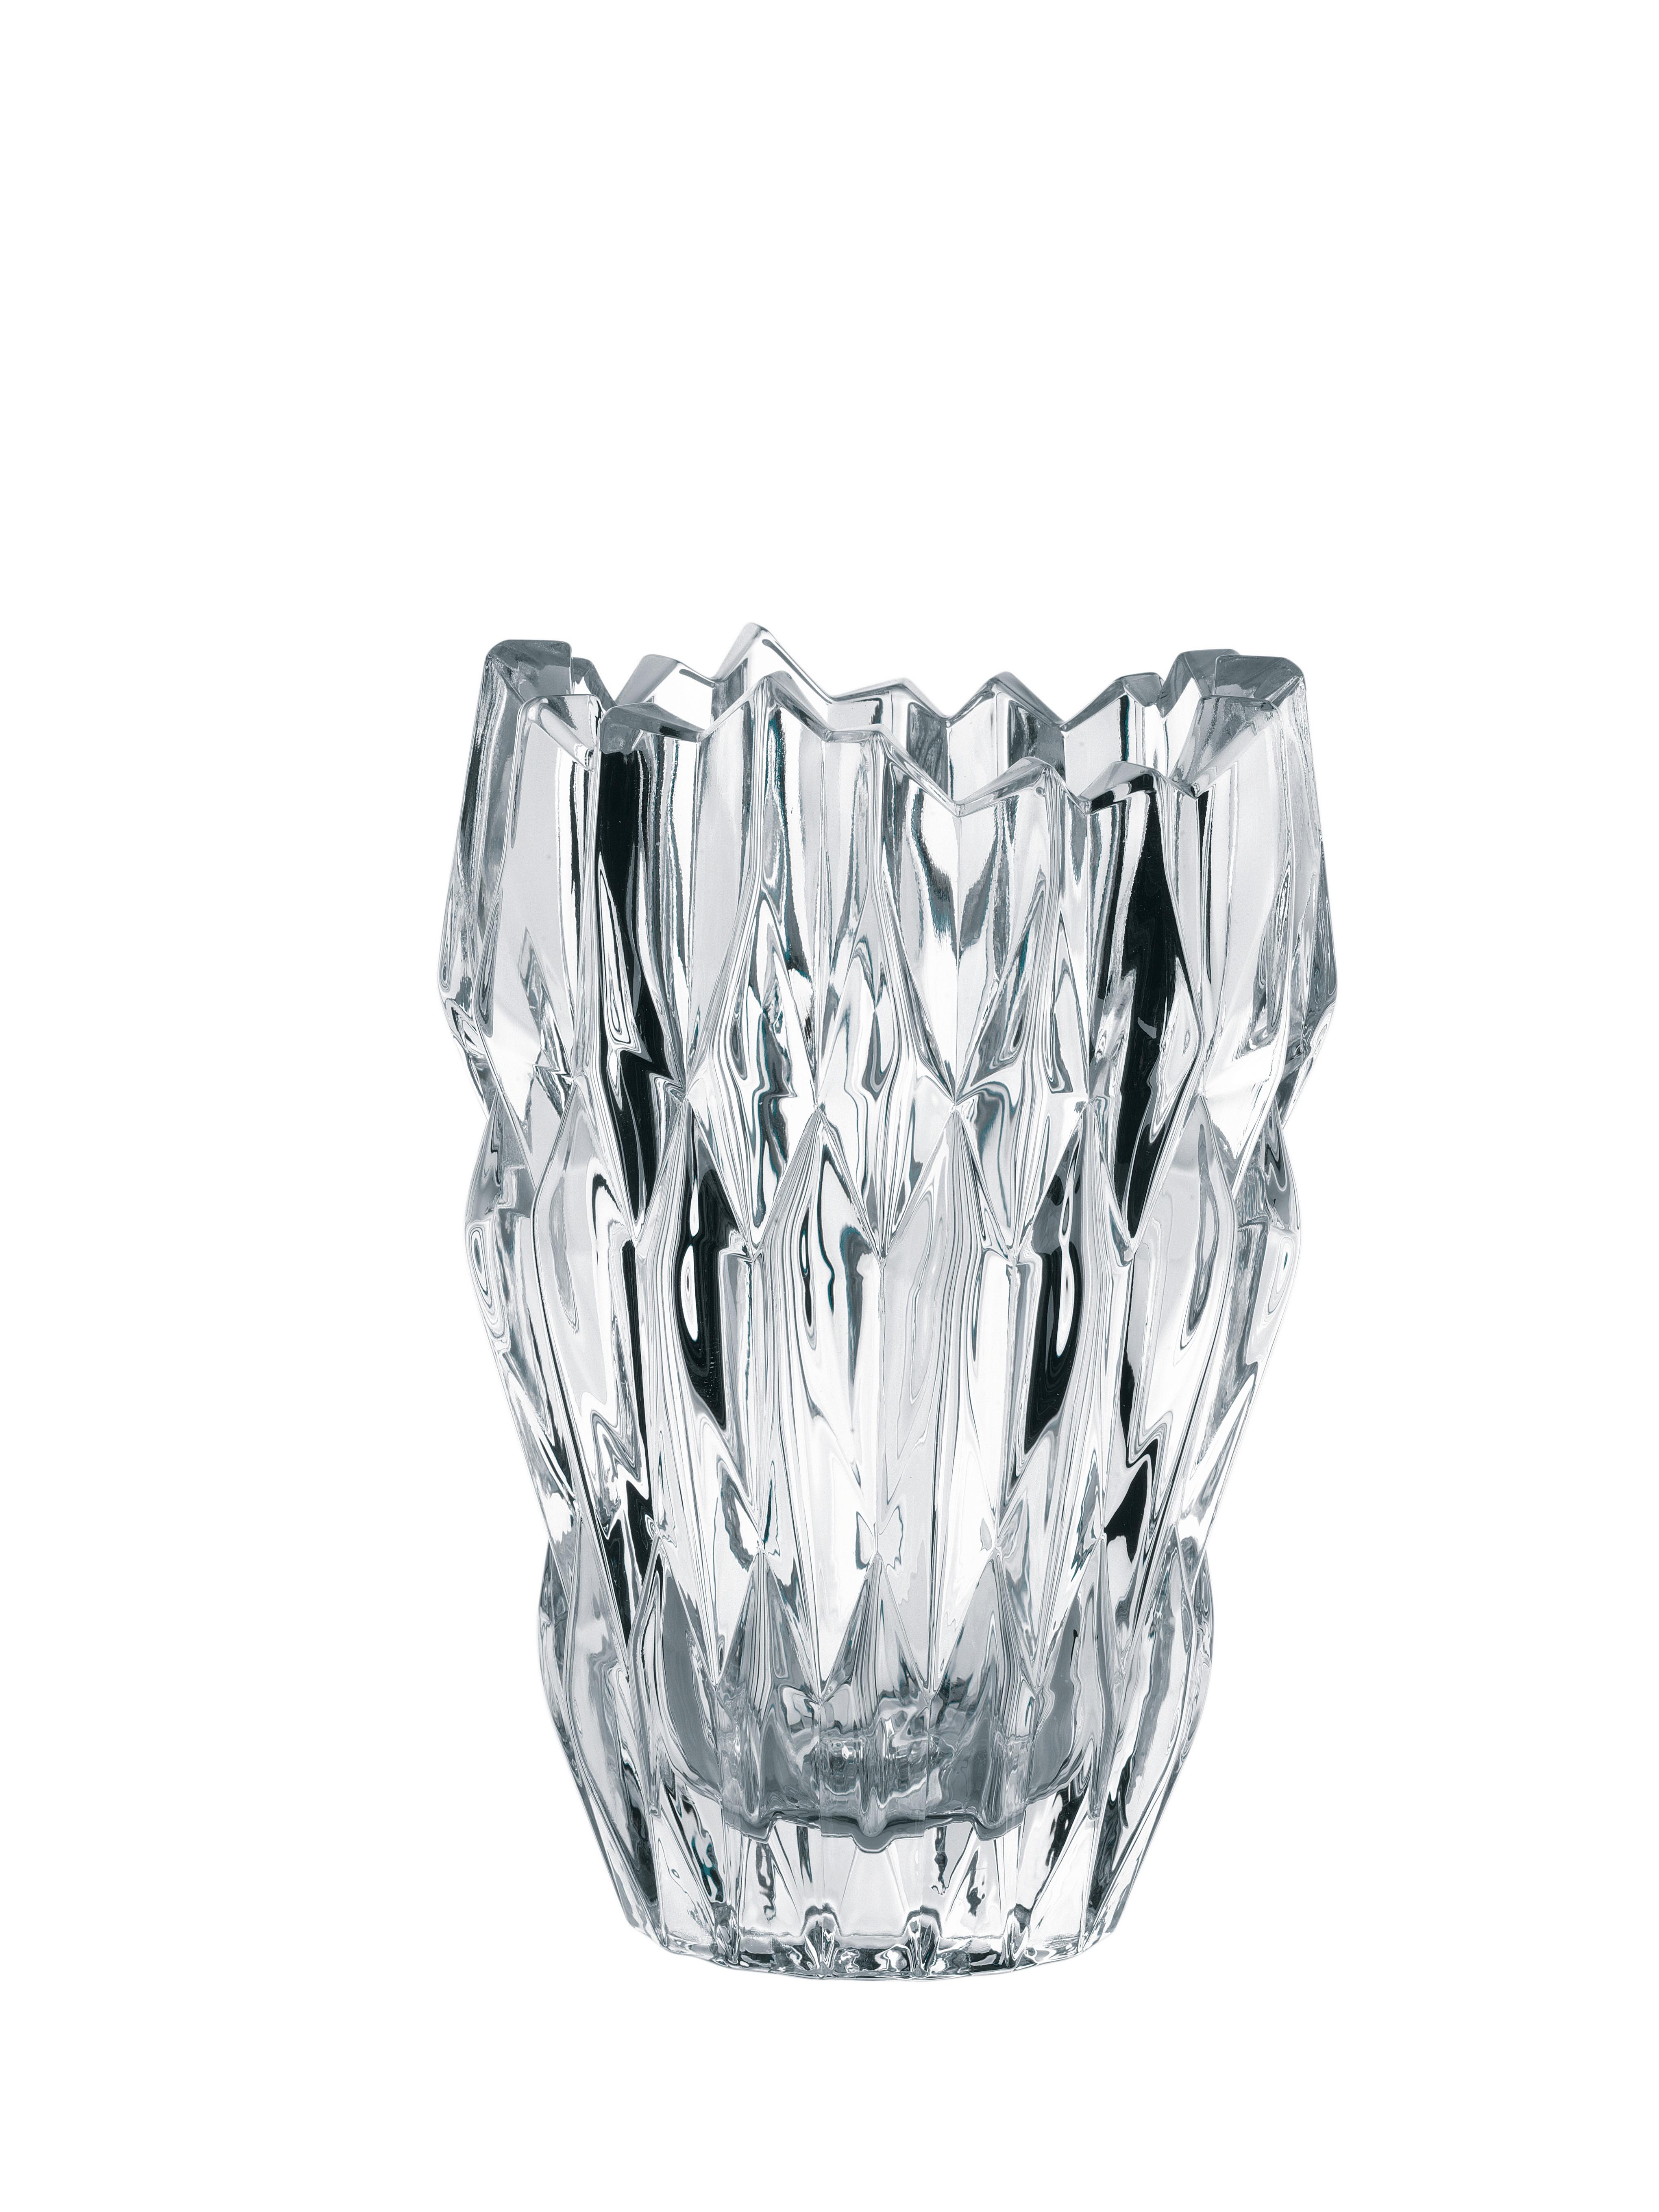 Vase Quartz aus Glas - Klar, MODERN, Glas (11,2/8,3/16,0cm) - Nachtmann